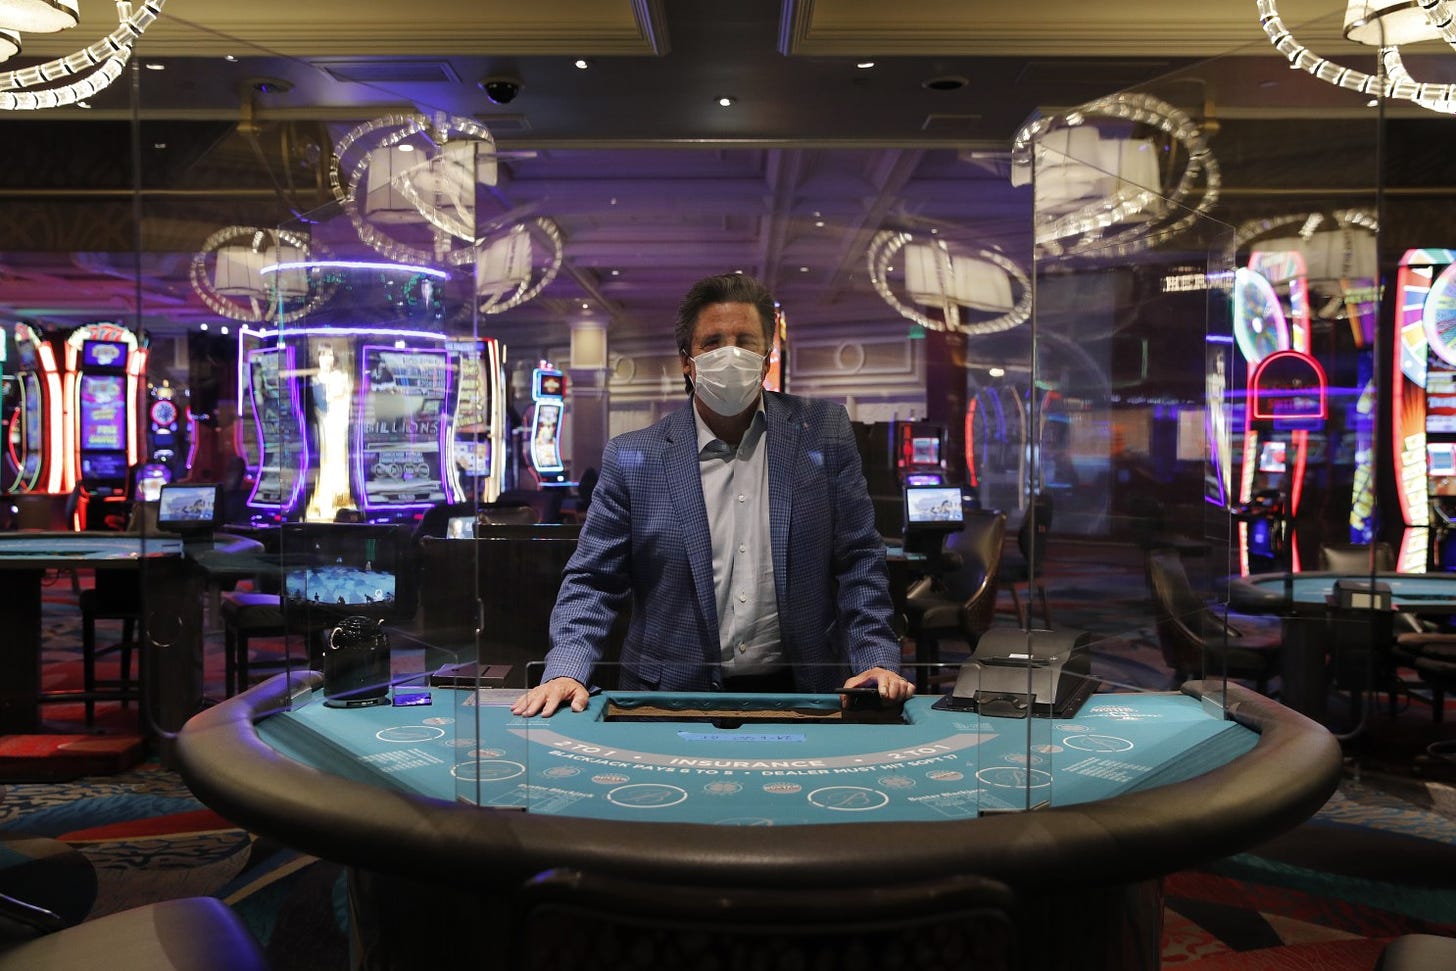 Covid precautions at the Bellagio casino in Las Vegas in May, 2020, via the Associated Press.